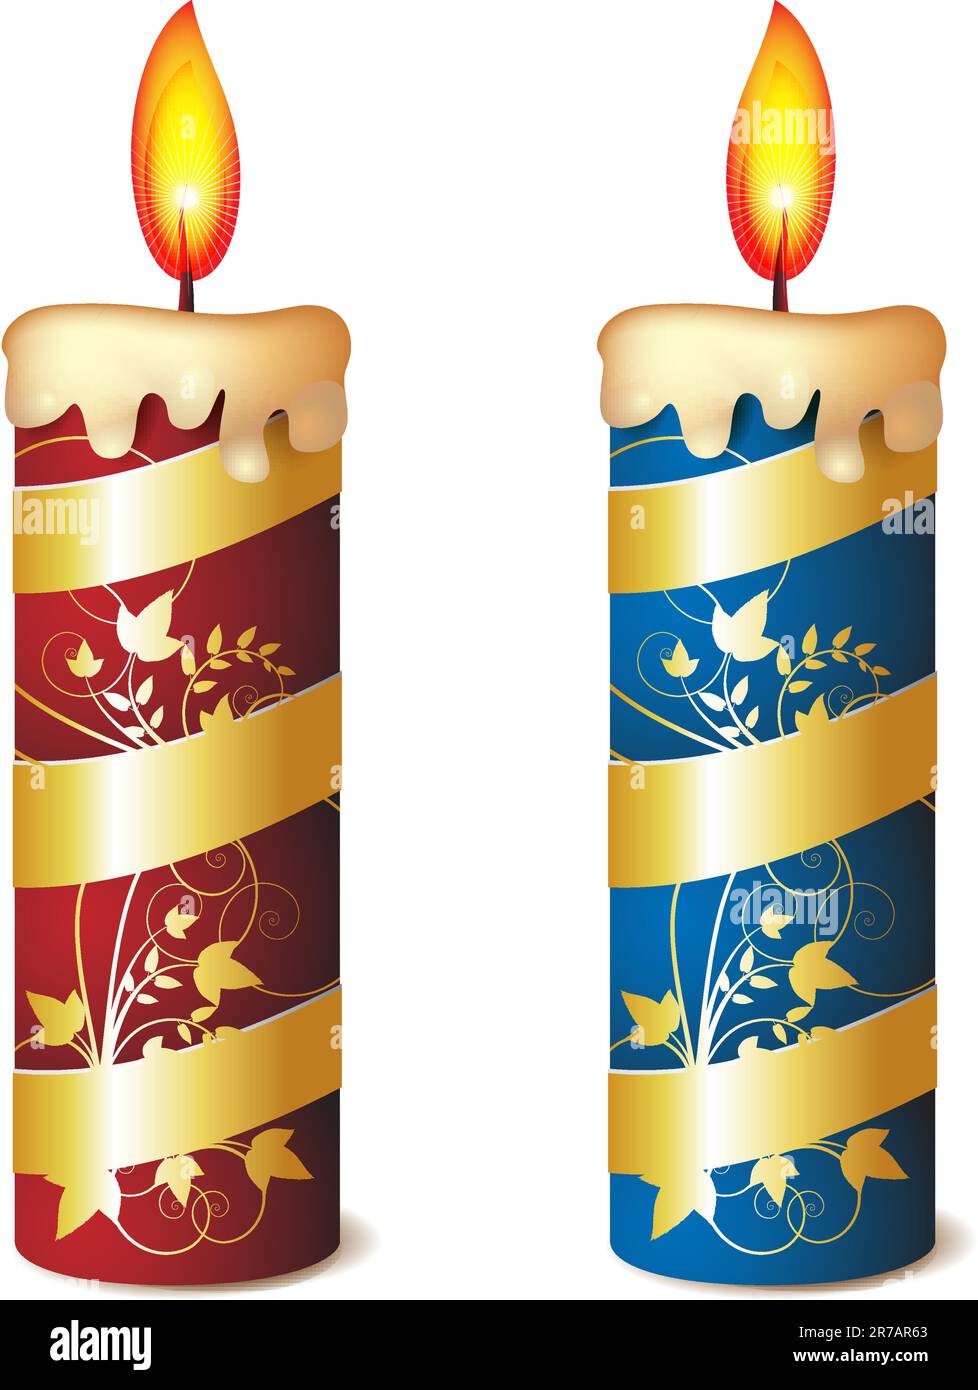 Deux élégantes bougies rouges et bleues décorées de ruban doré Illustration de Vecteur